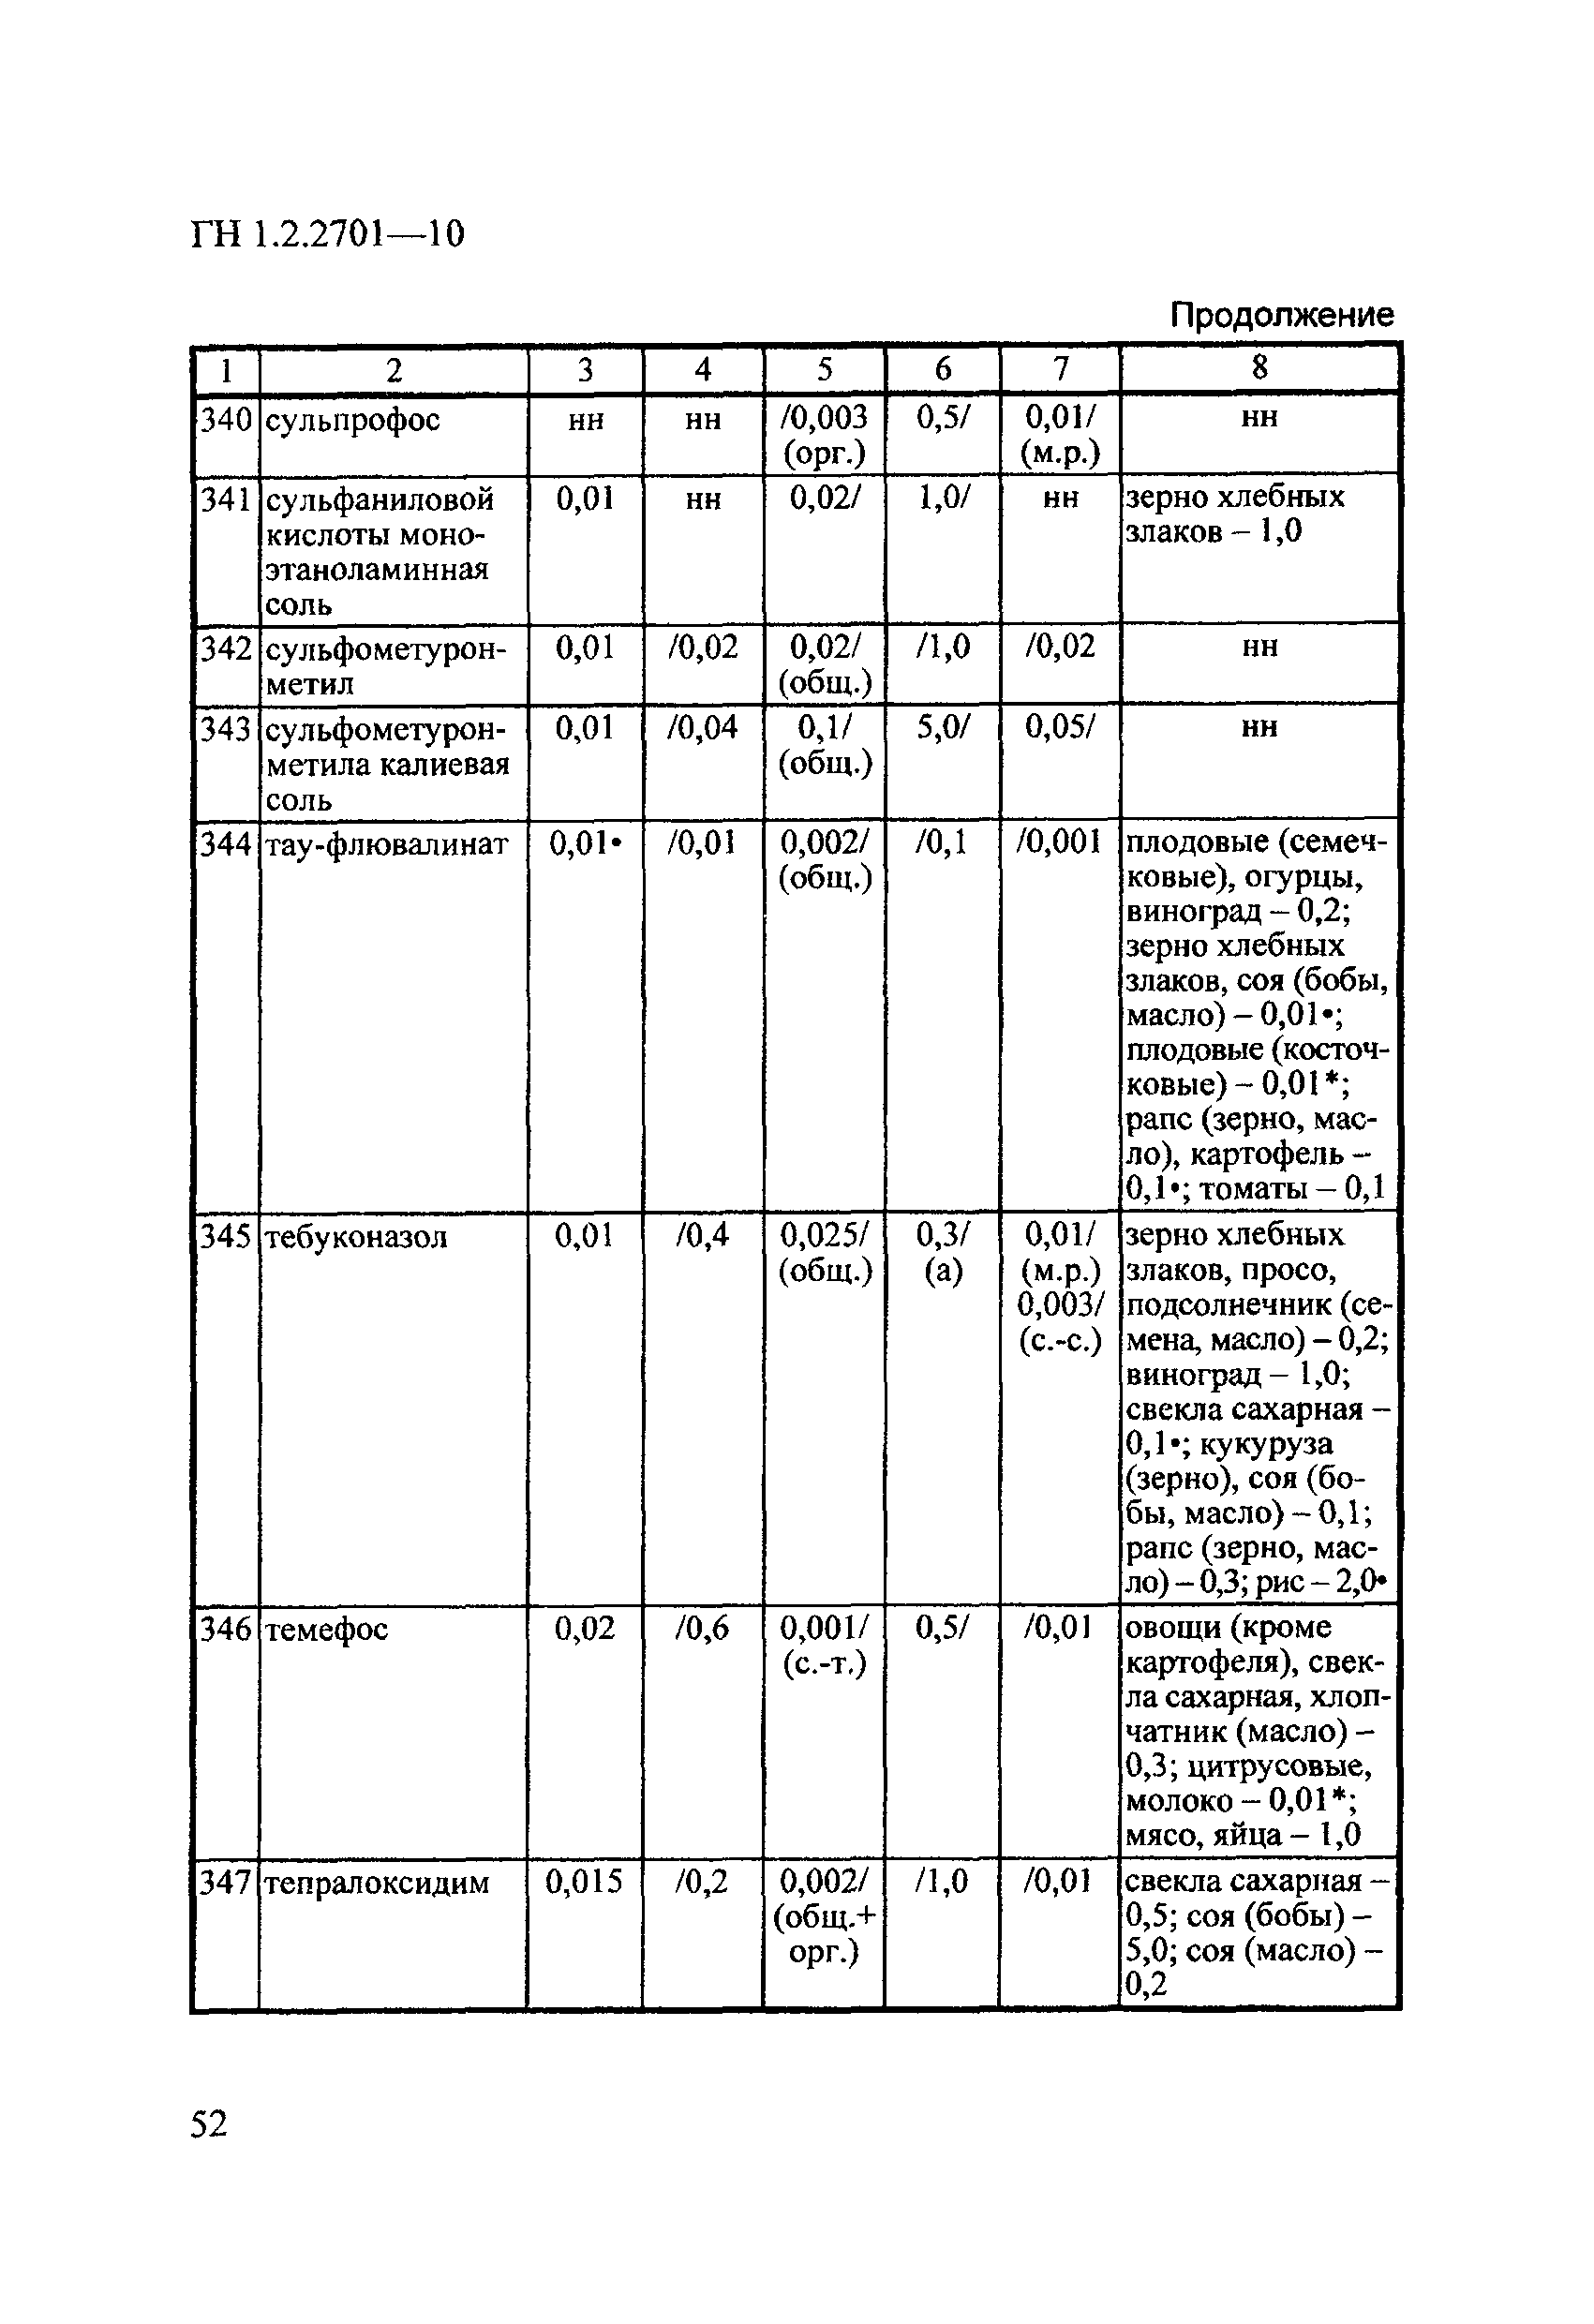 ГН 1.2.2701-10